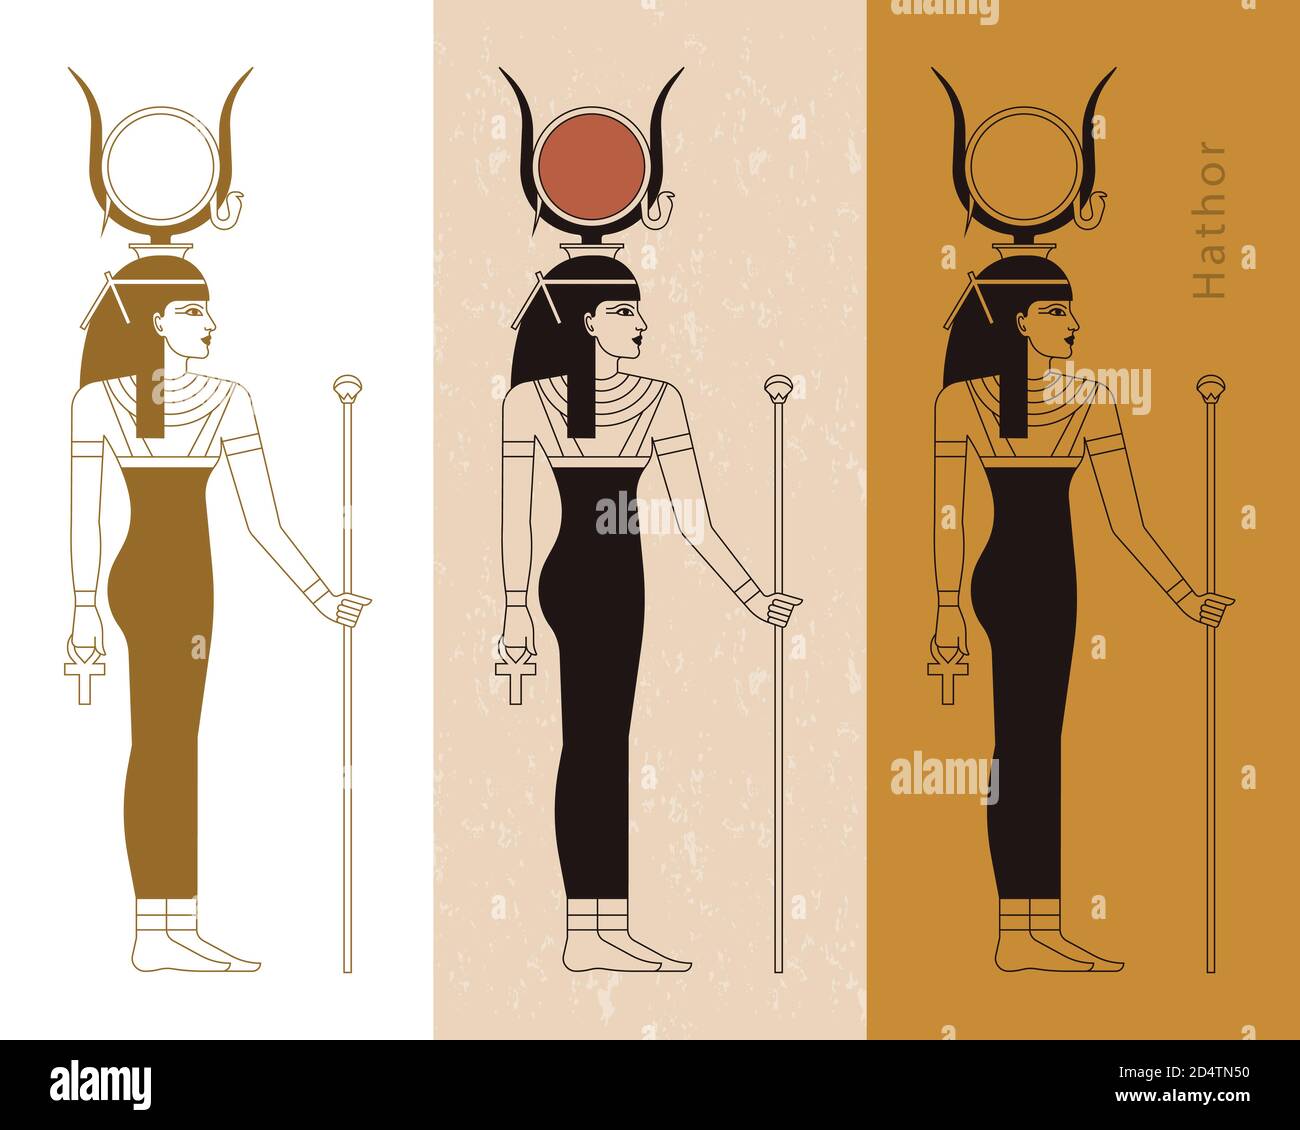 Eine Sammlung von Vektorgrafiken der altägyptischen Göttin Hathor aus dem Ankh. Stock Vektor